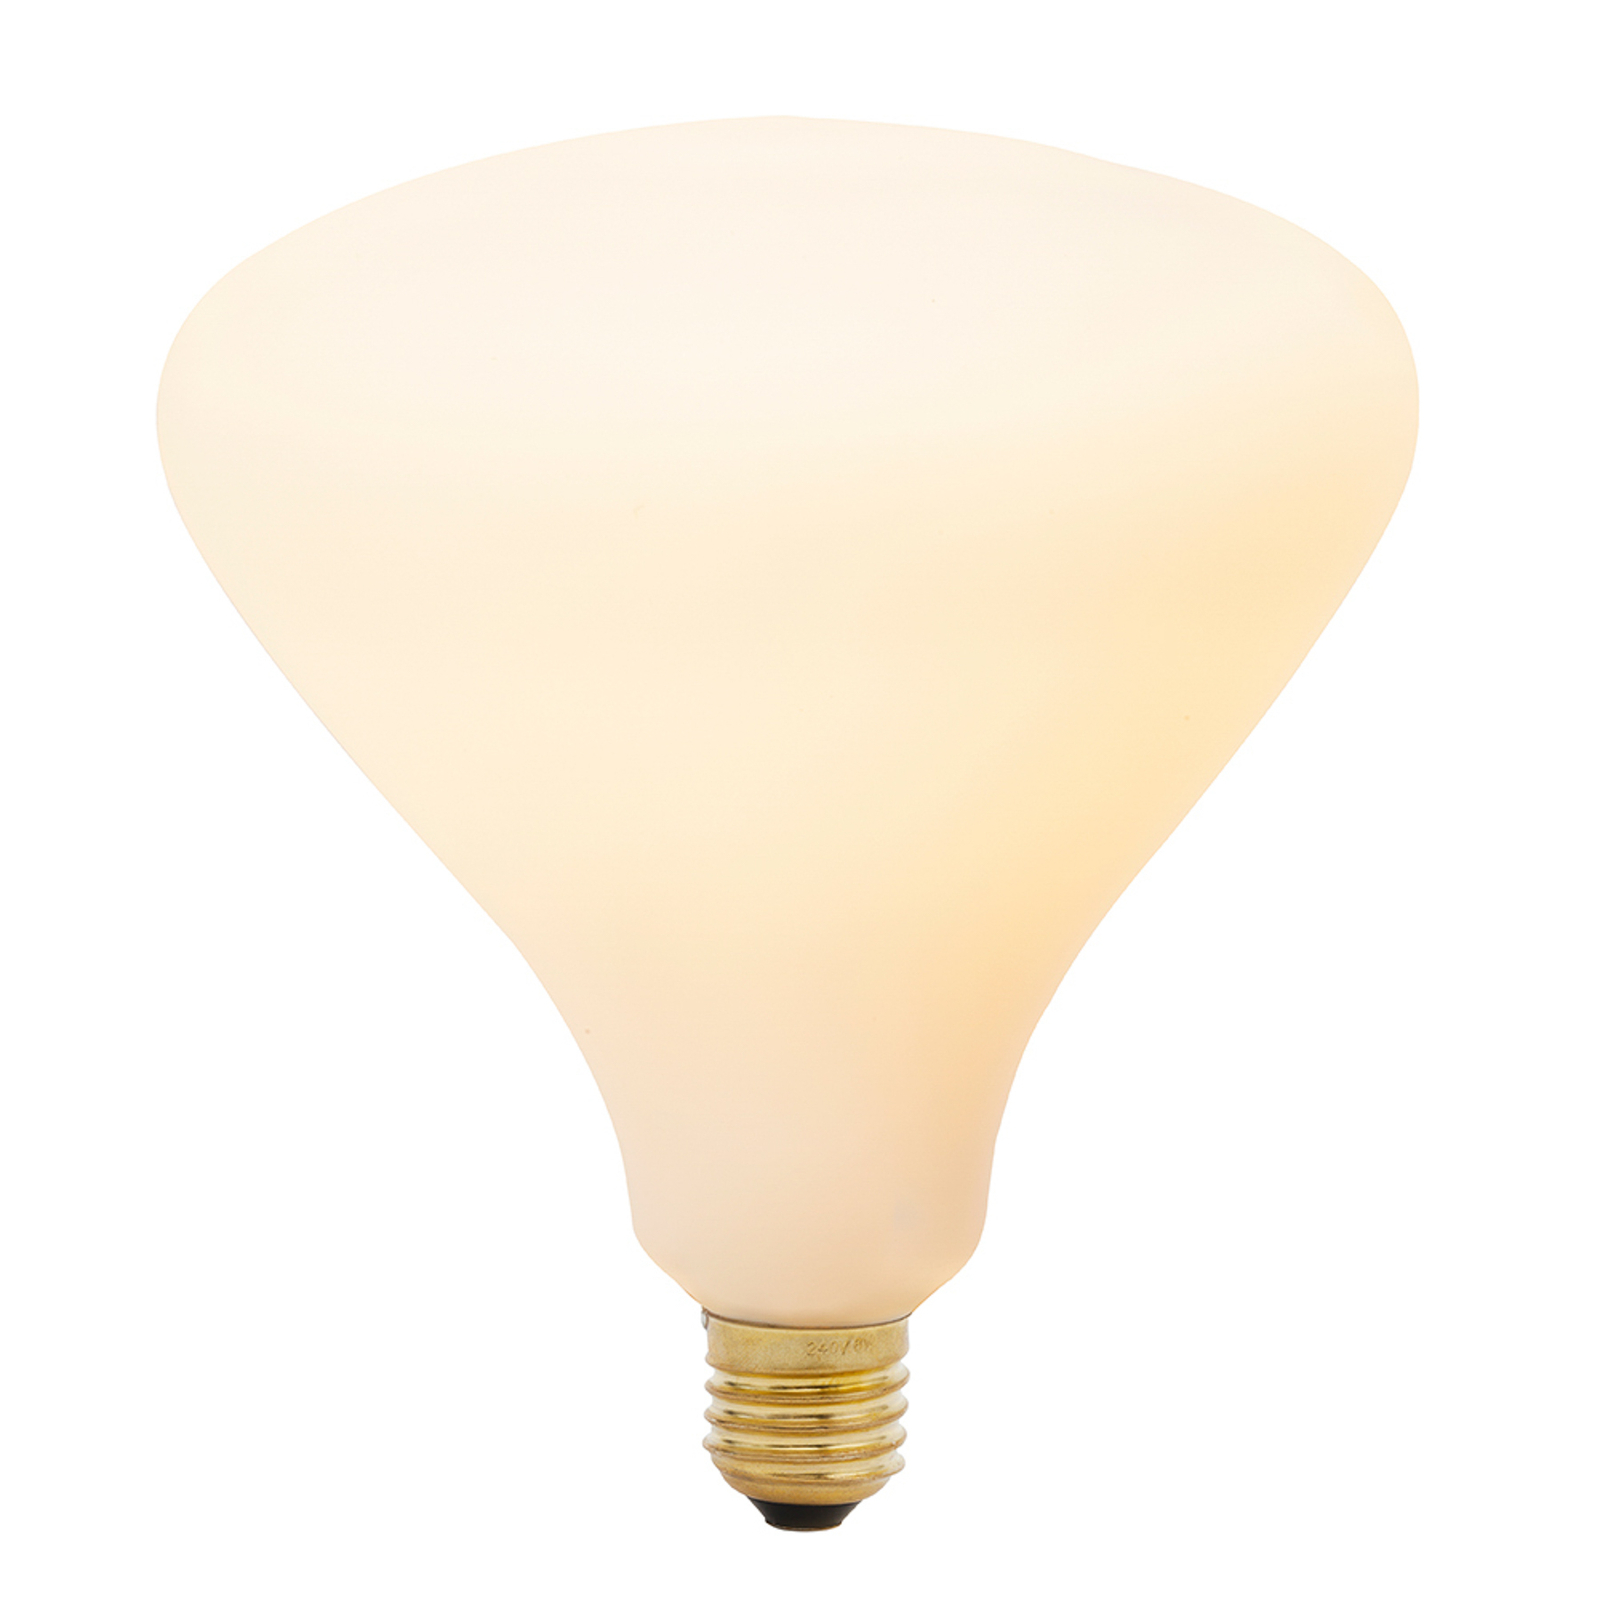 Tala LED bulb Noma matt E27 6W 2,700 K 540 lm dimmable.